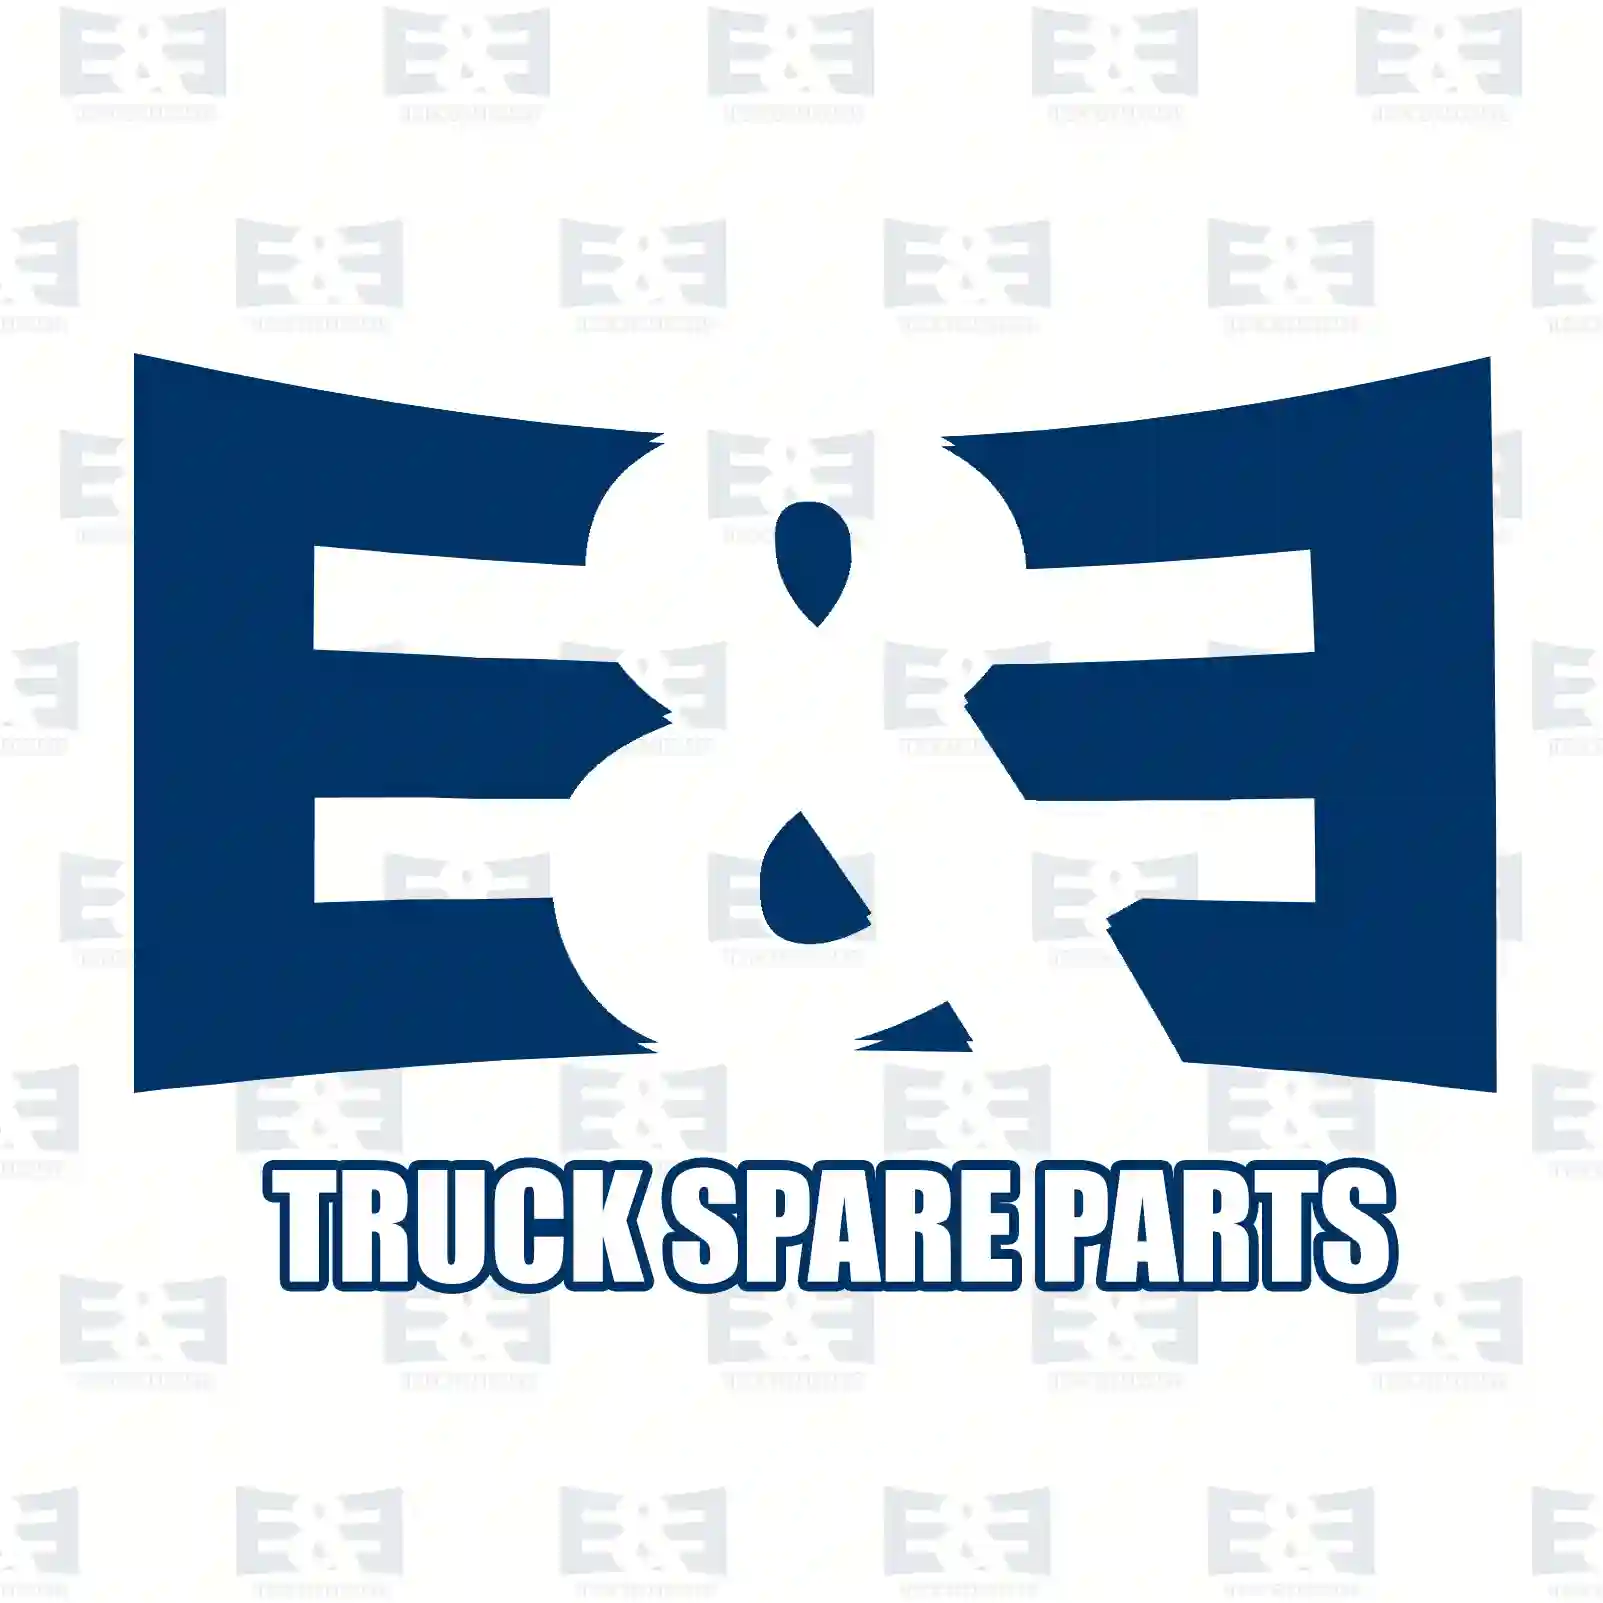 Brake drum, 2E2293970, 42063017, , , , , , ||  2E2293970 E&E Truck Spare Parts | Truck Spare Parts, Auotomotive Spare Parts Brake drum, 2E2293970, 42063017, , , , , , ||  2E2293970 E&E Truck Spare Parts | Truck Spare Parts, Auotomotive Spare Parts